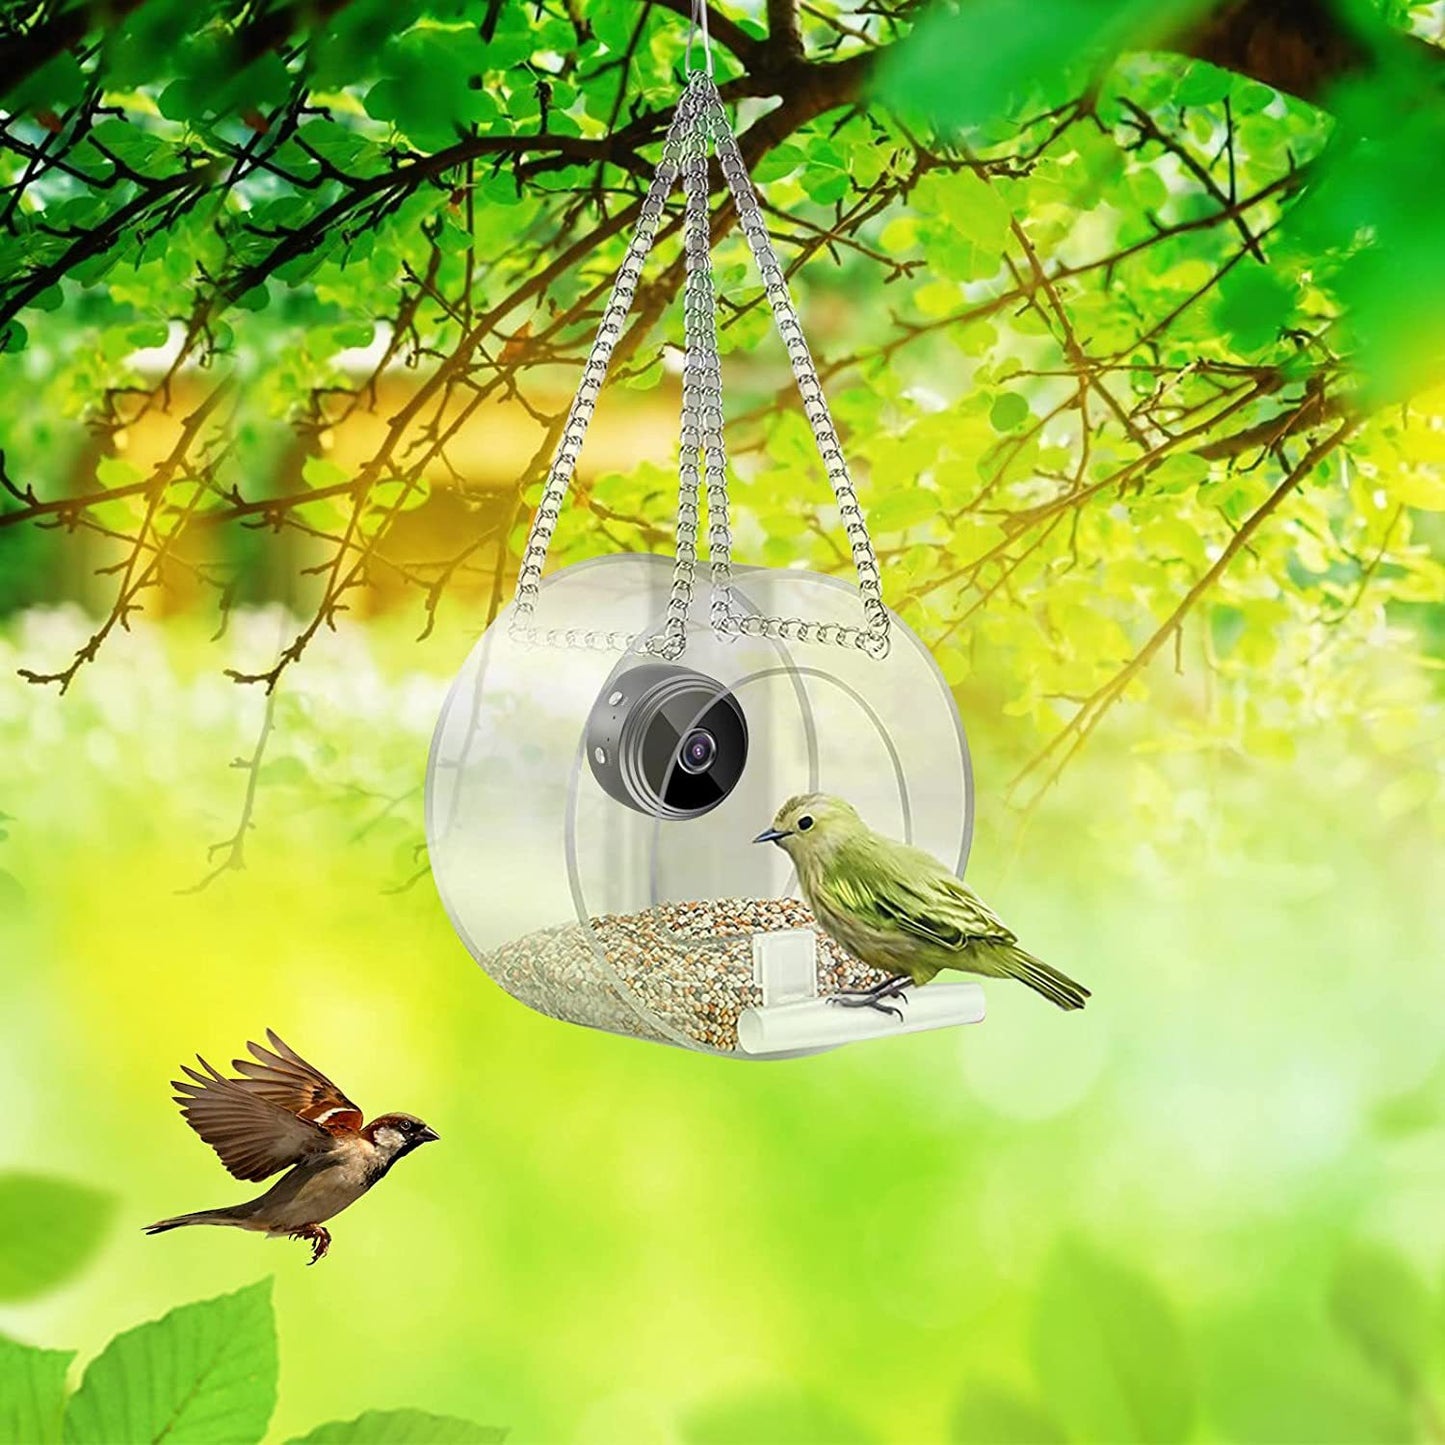 Smart Bird Feeder with Wireless WiFi Camera | Bird Feeder with Smart Camera